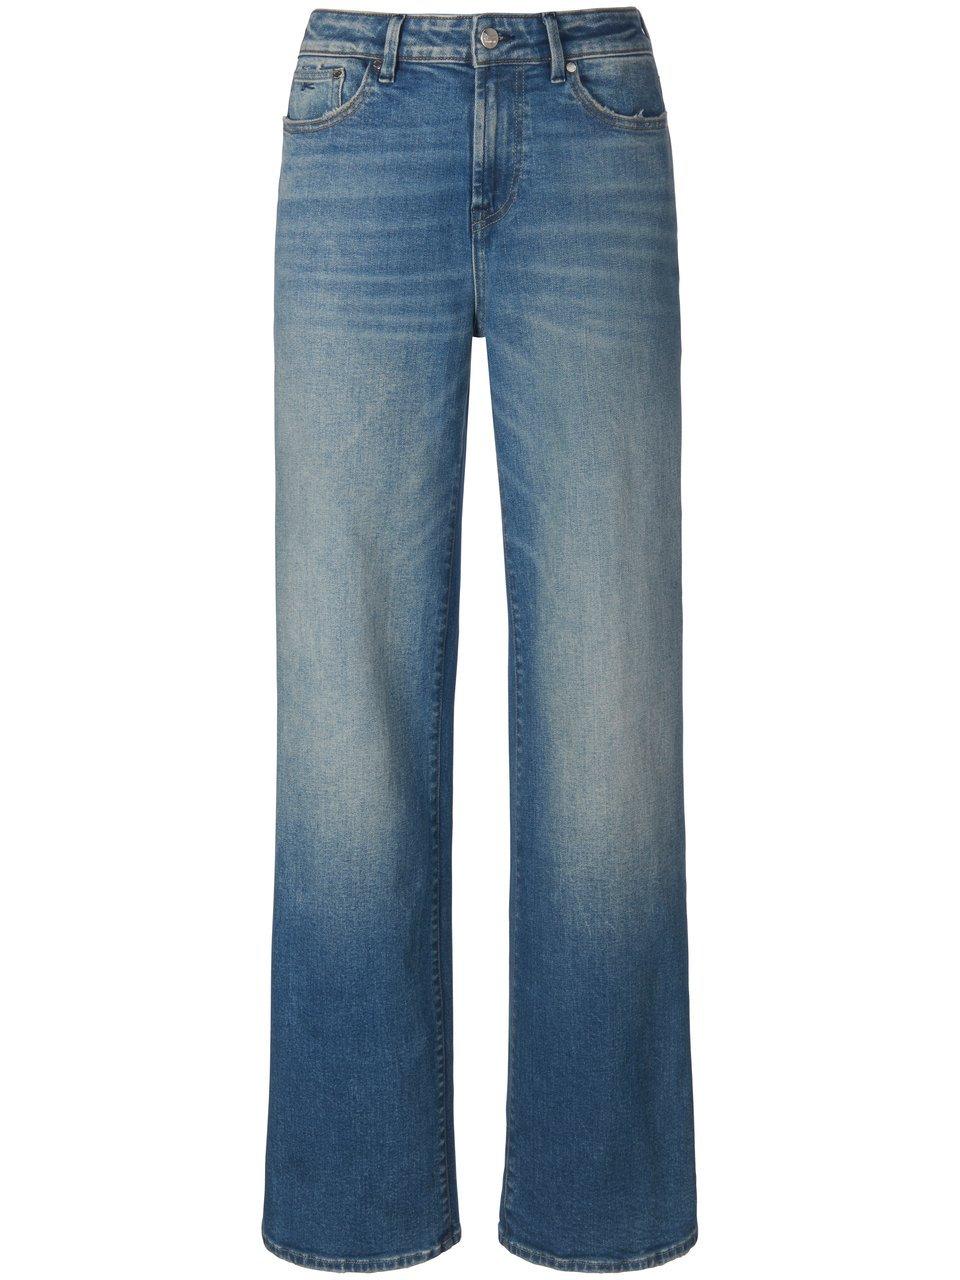 Jeans in inch-lengte 30 Van Denham blauw